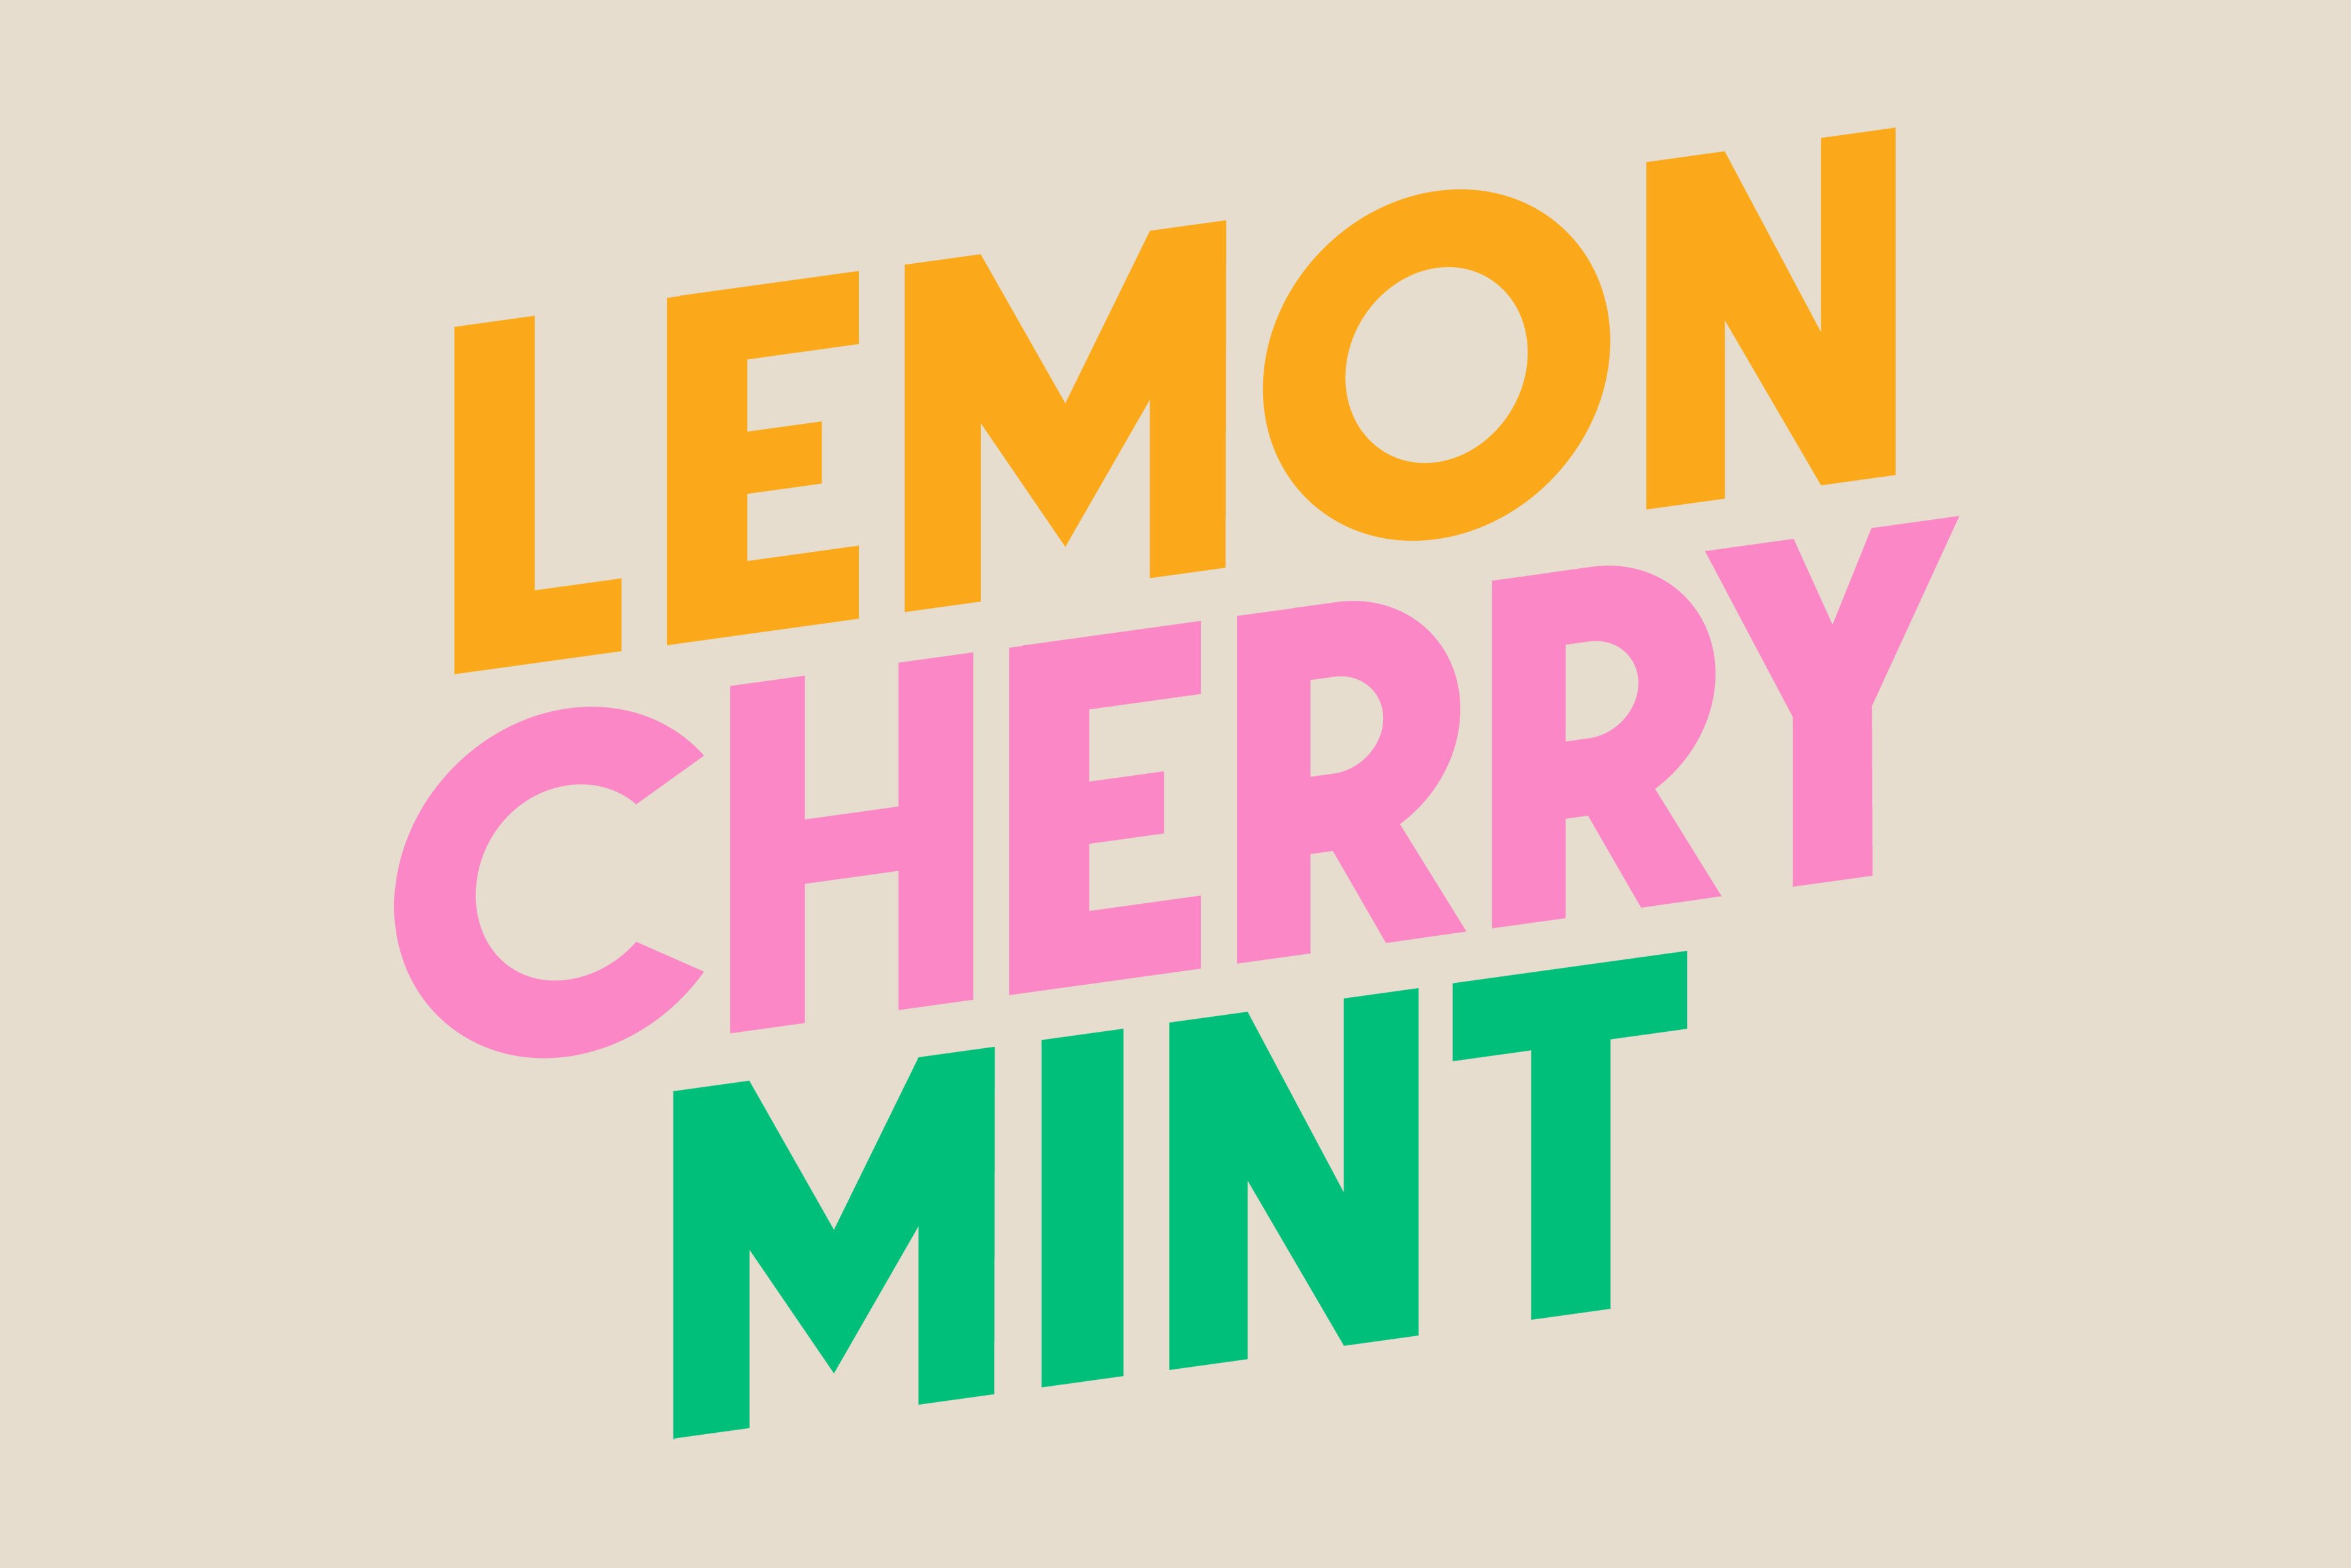 Lemon Cherry Mint Font Duo cover image.